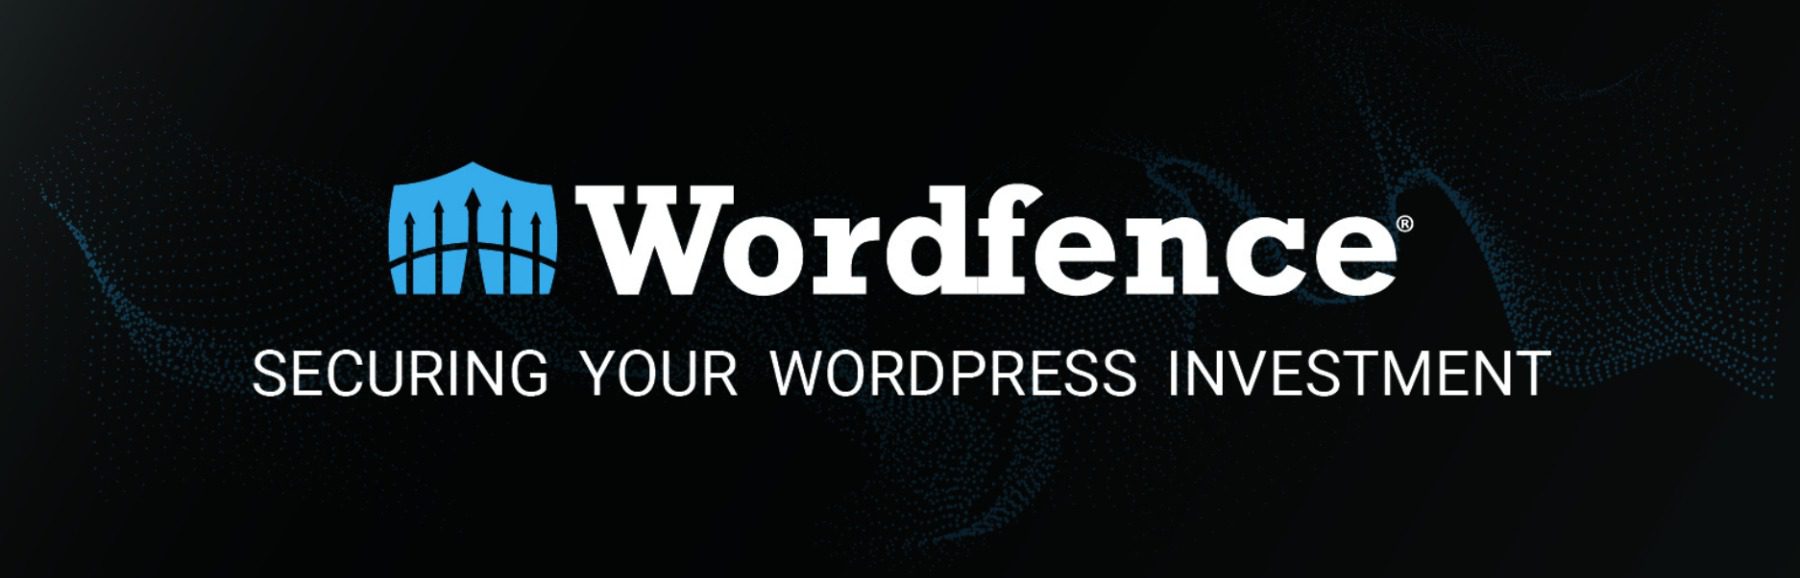 The Wordfence WordPress security plugin.